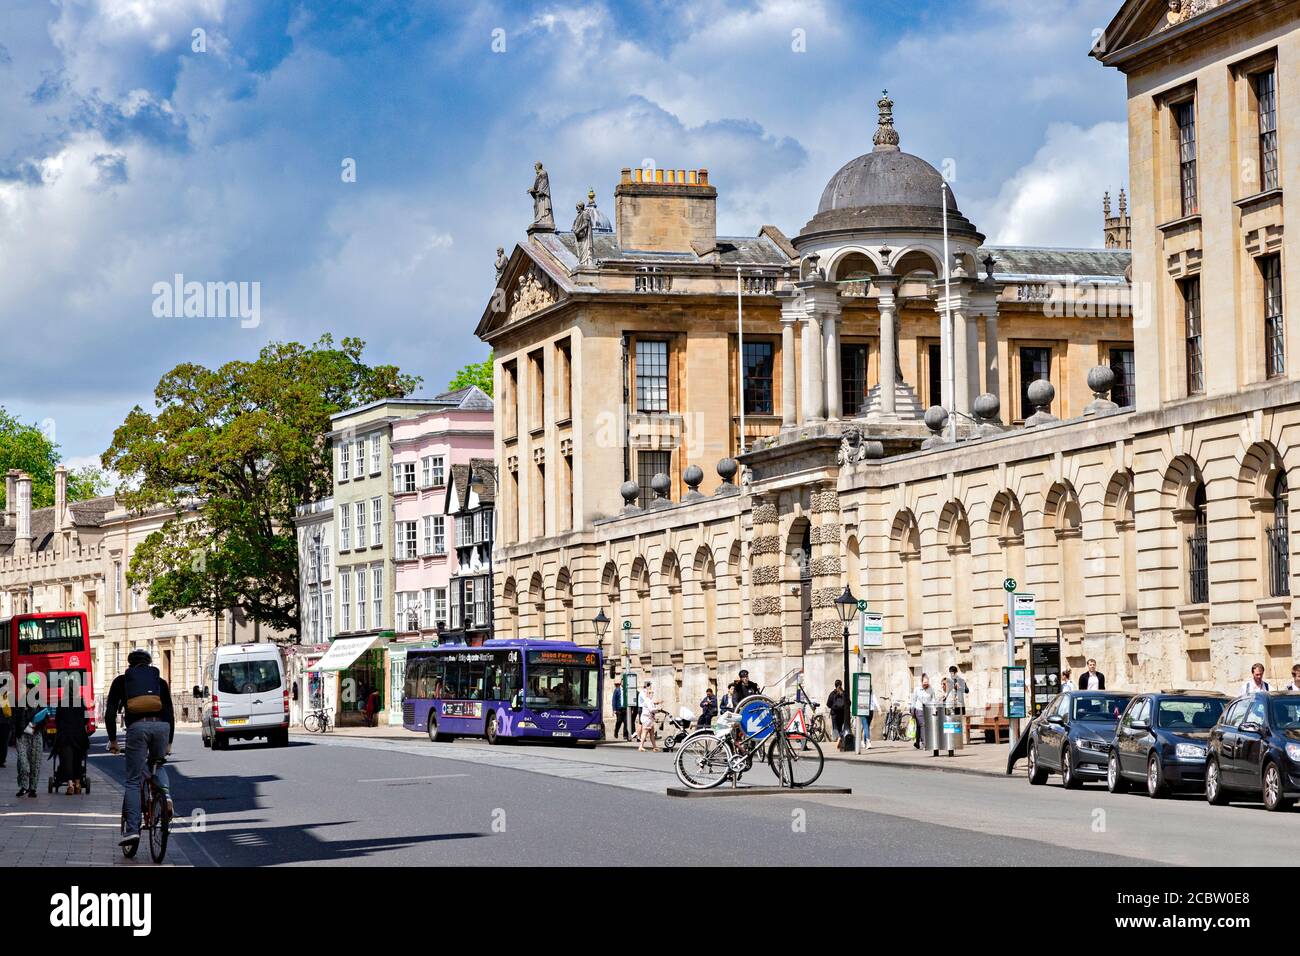 6 giugno 2019: Oxford, Regno Unito. High Street, con Queen's College sulla destra. Persone che camminano lungo, autobus, traffico. Foto Stock